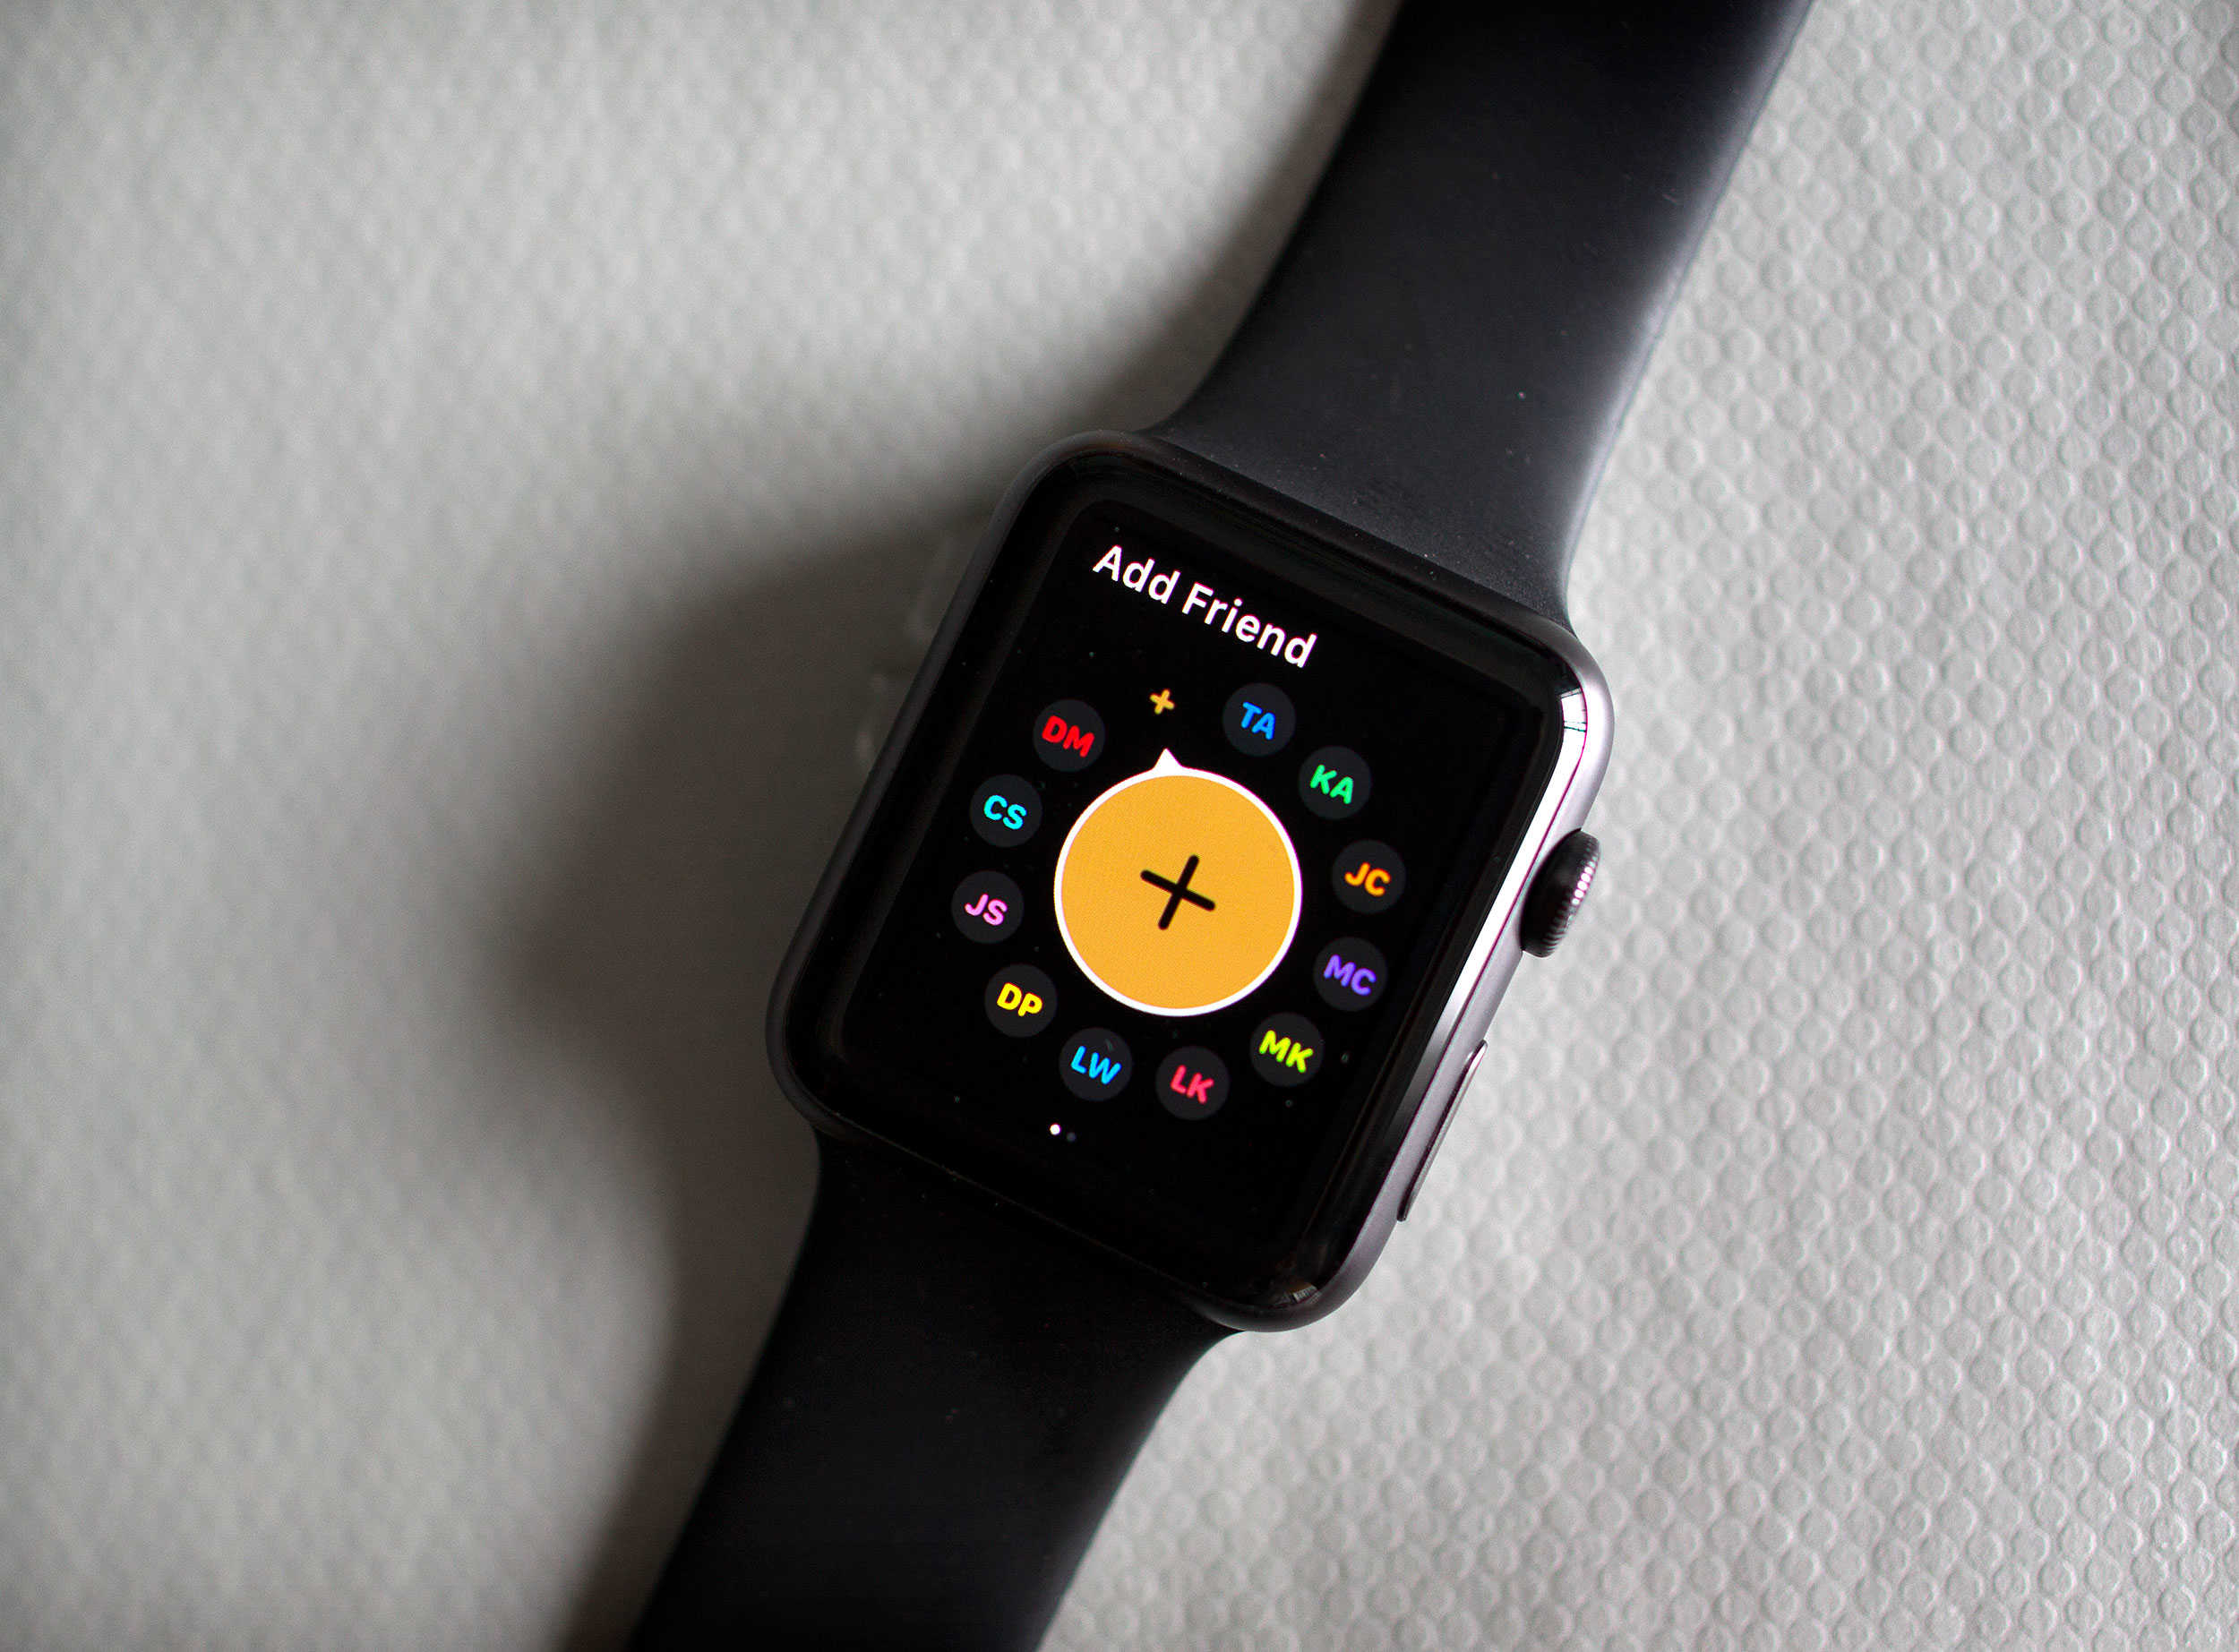 Apple Watch OS2 add a friend